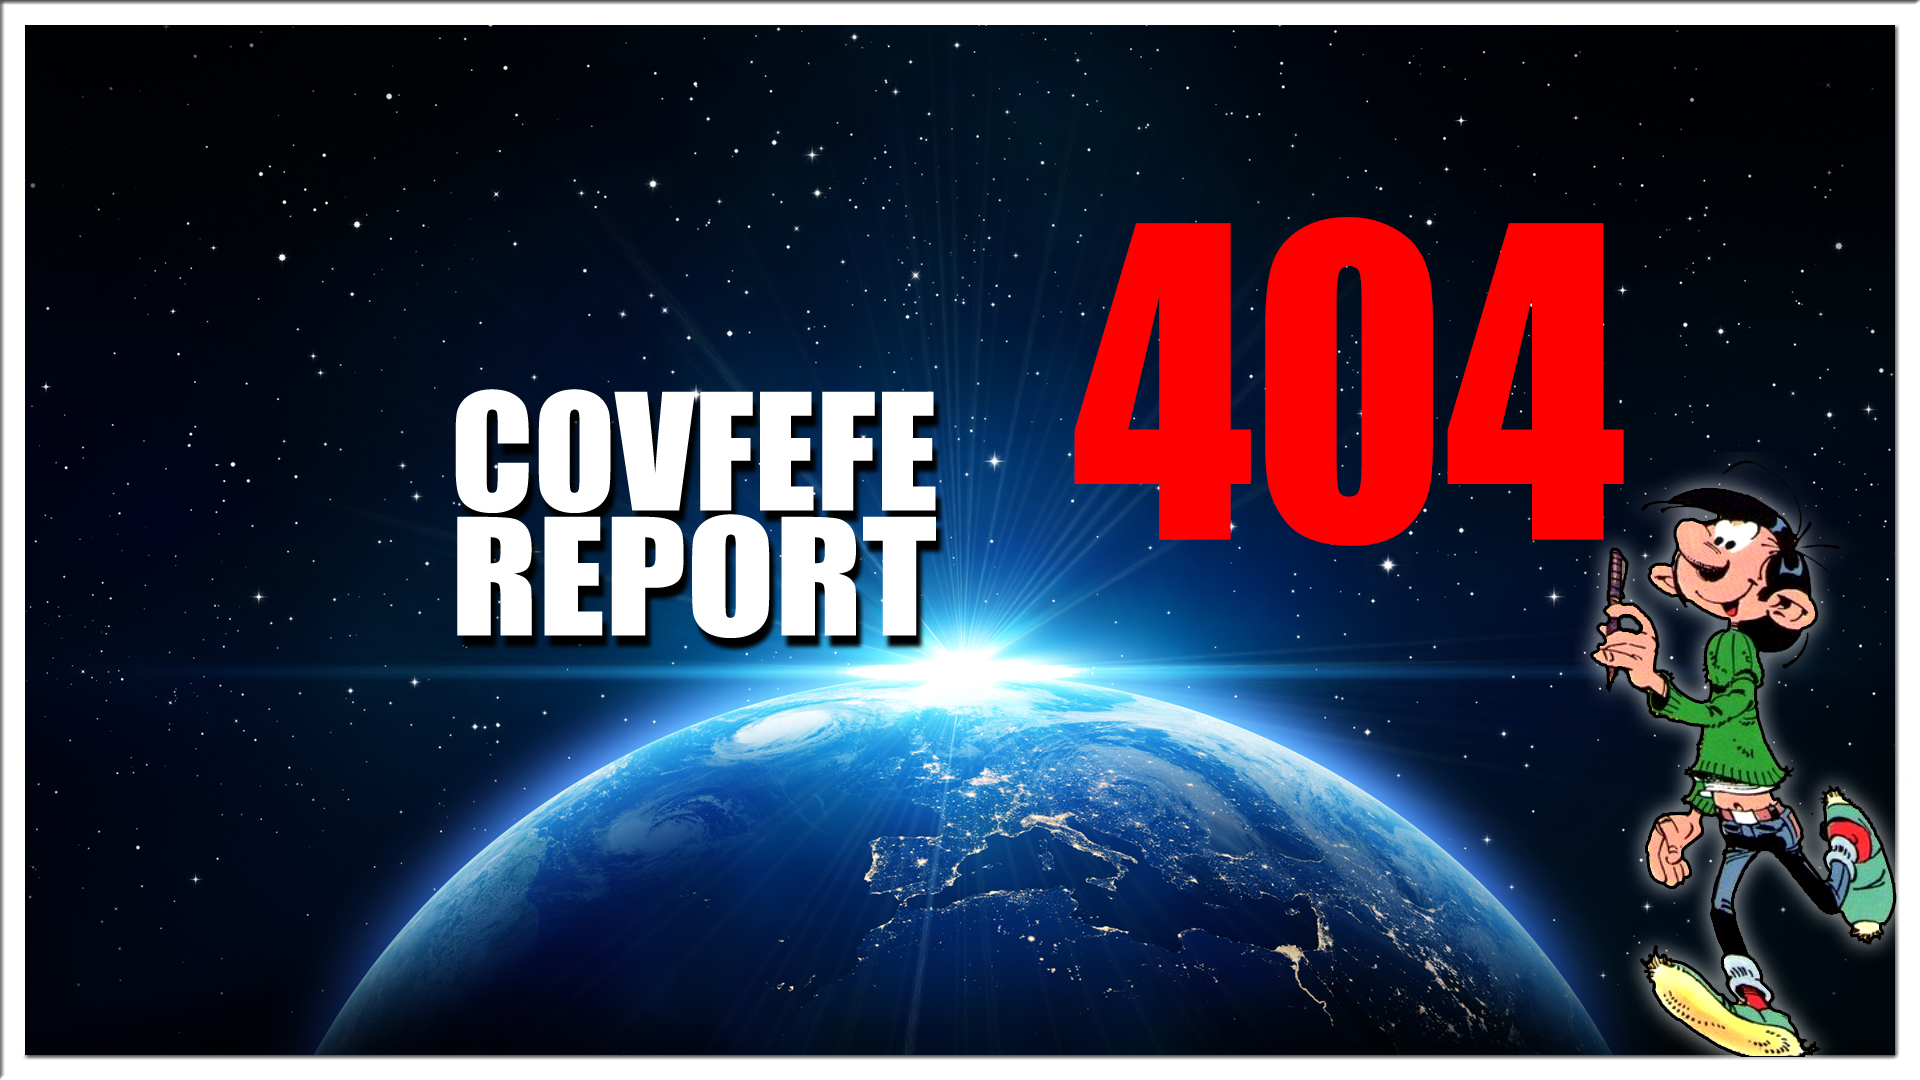 Covfefe Report 404. Patriotten afwezig in DC, Zieke propaganda, Gewoon bloot